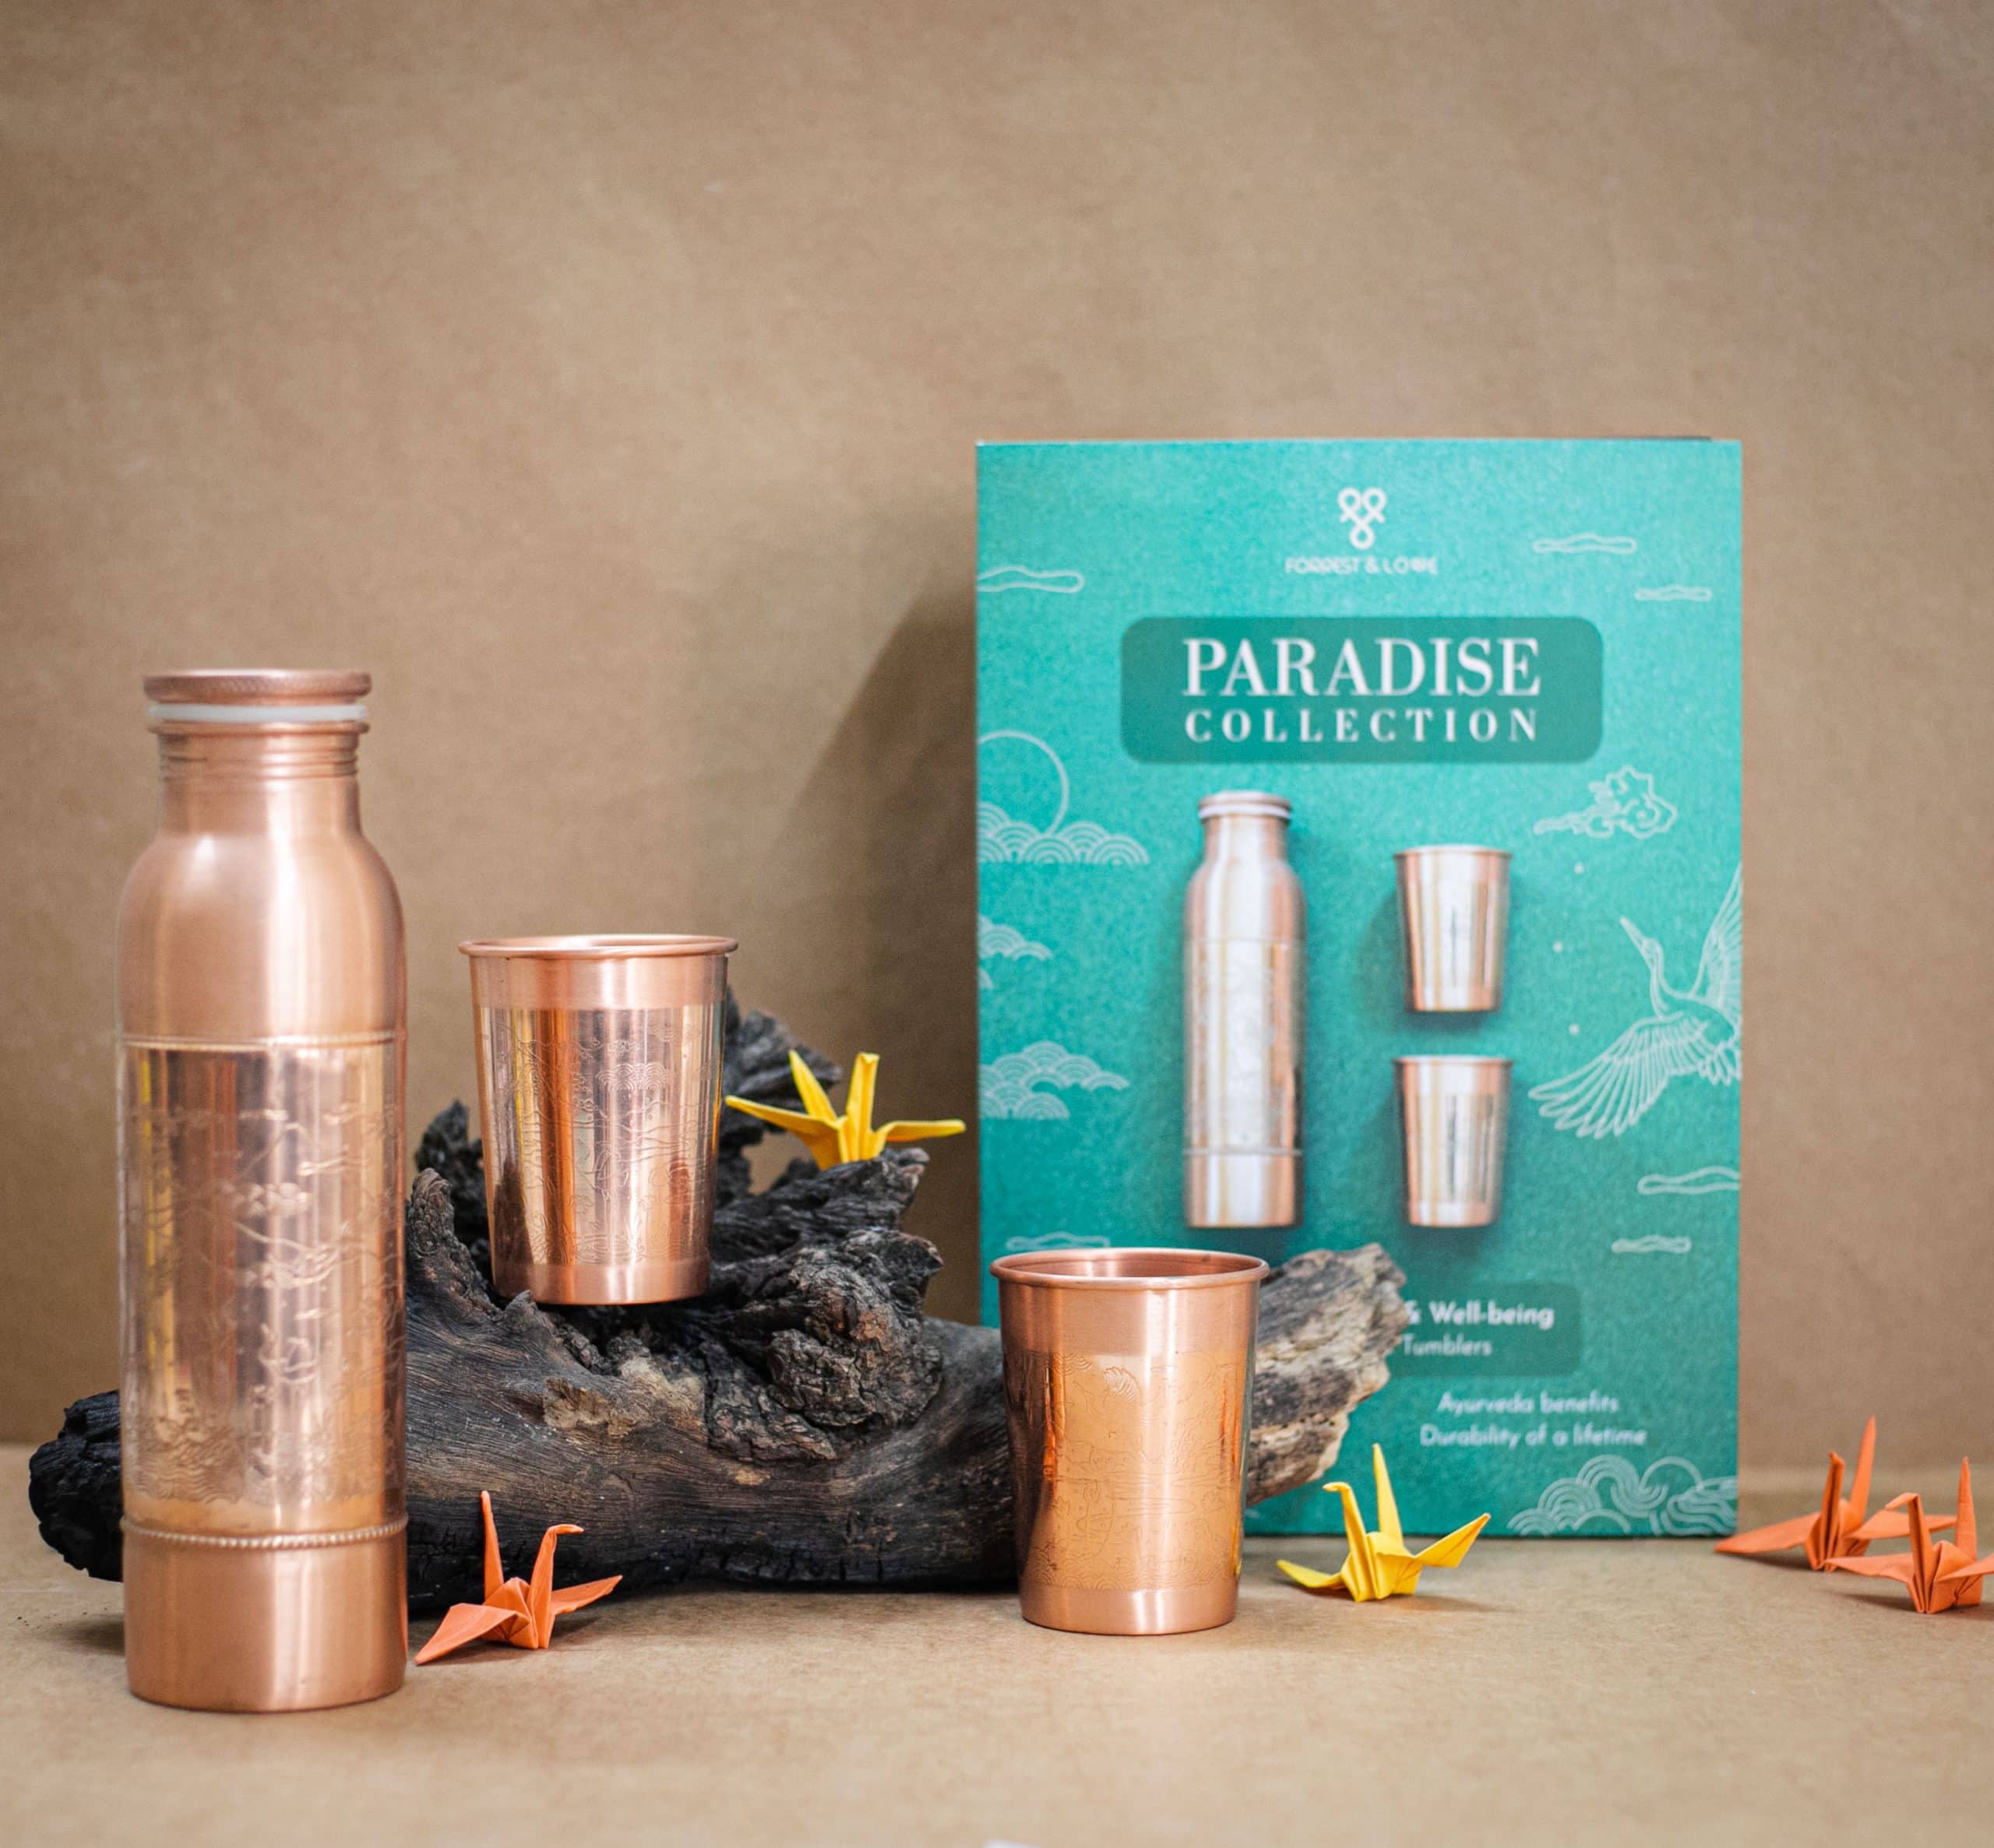 Paradise Gift set